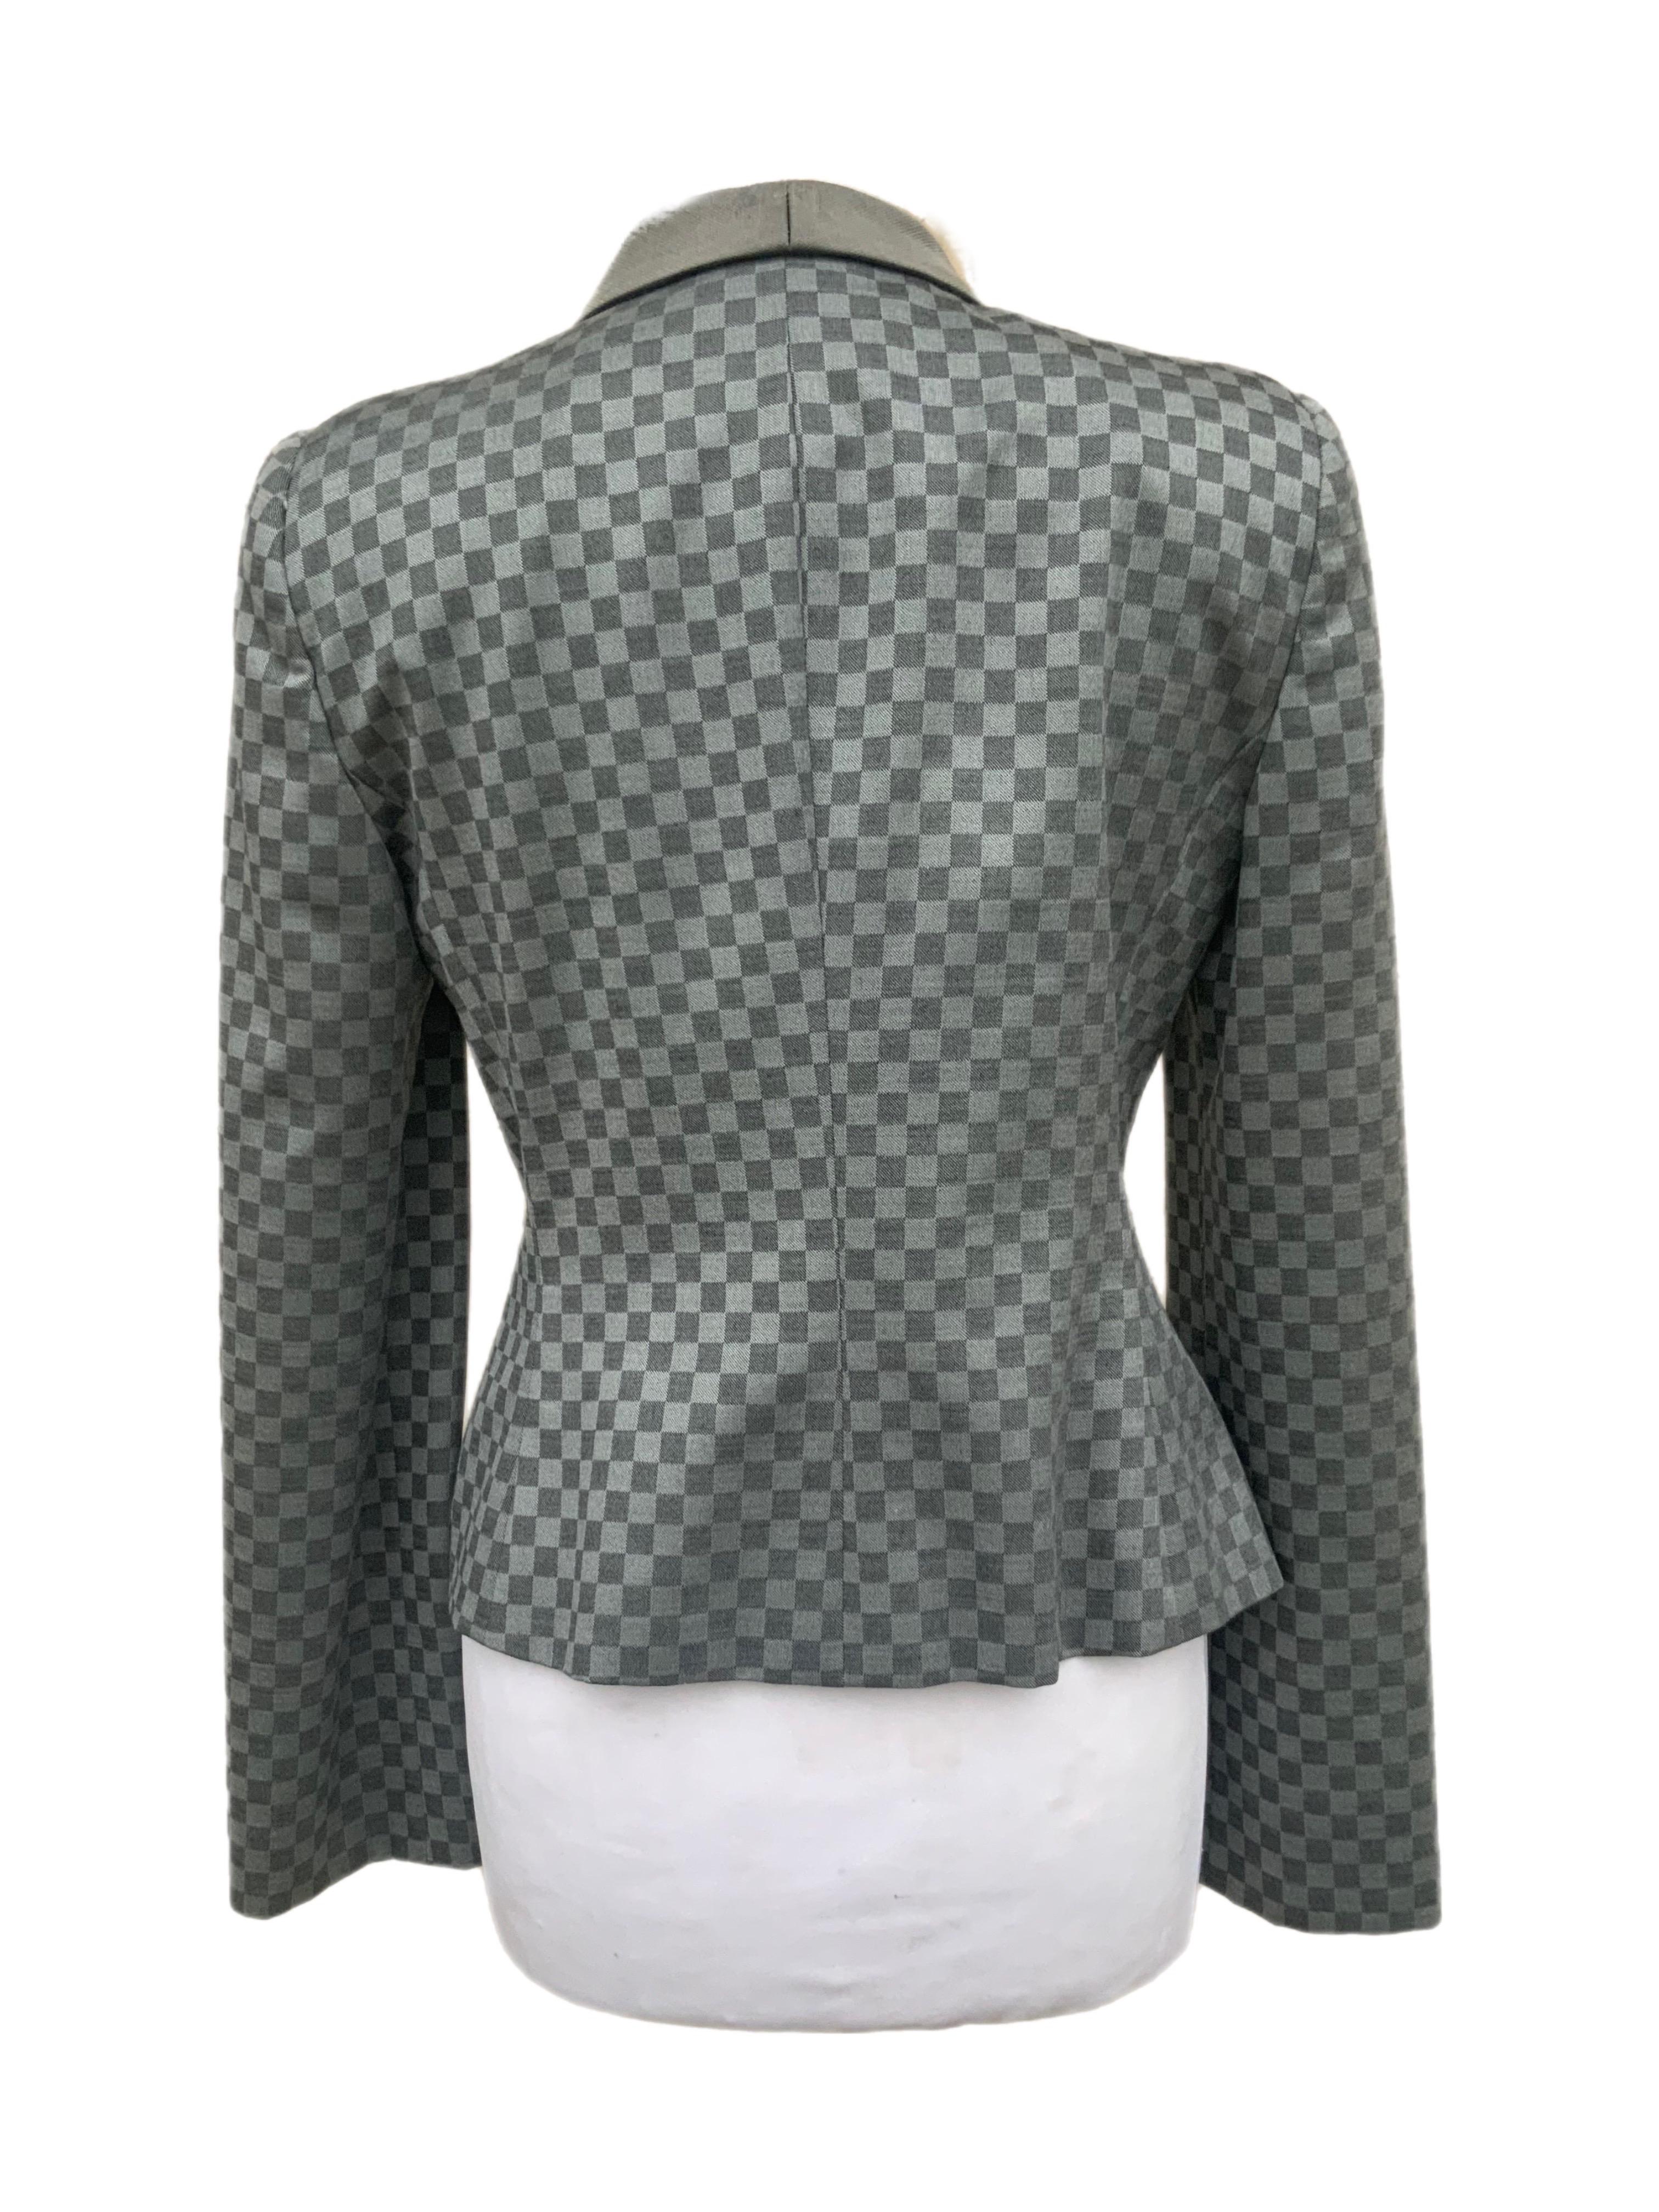 Giorgio Armani checkered blazer In Excellent Condition For Sale In Basaluzzo, IT